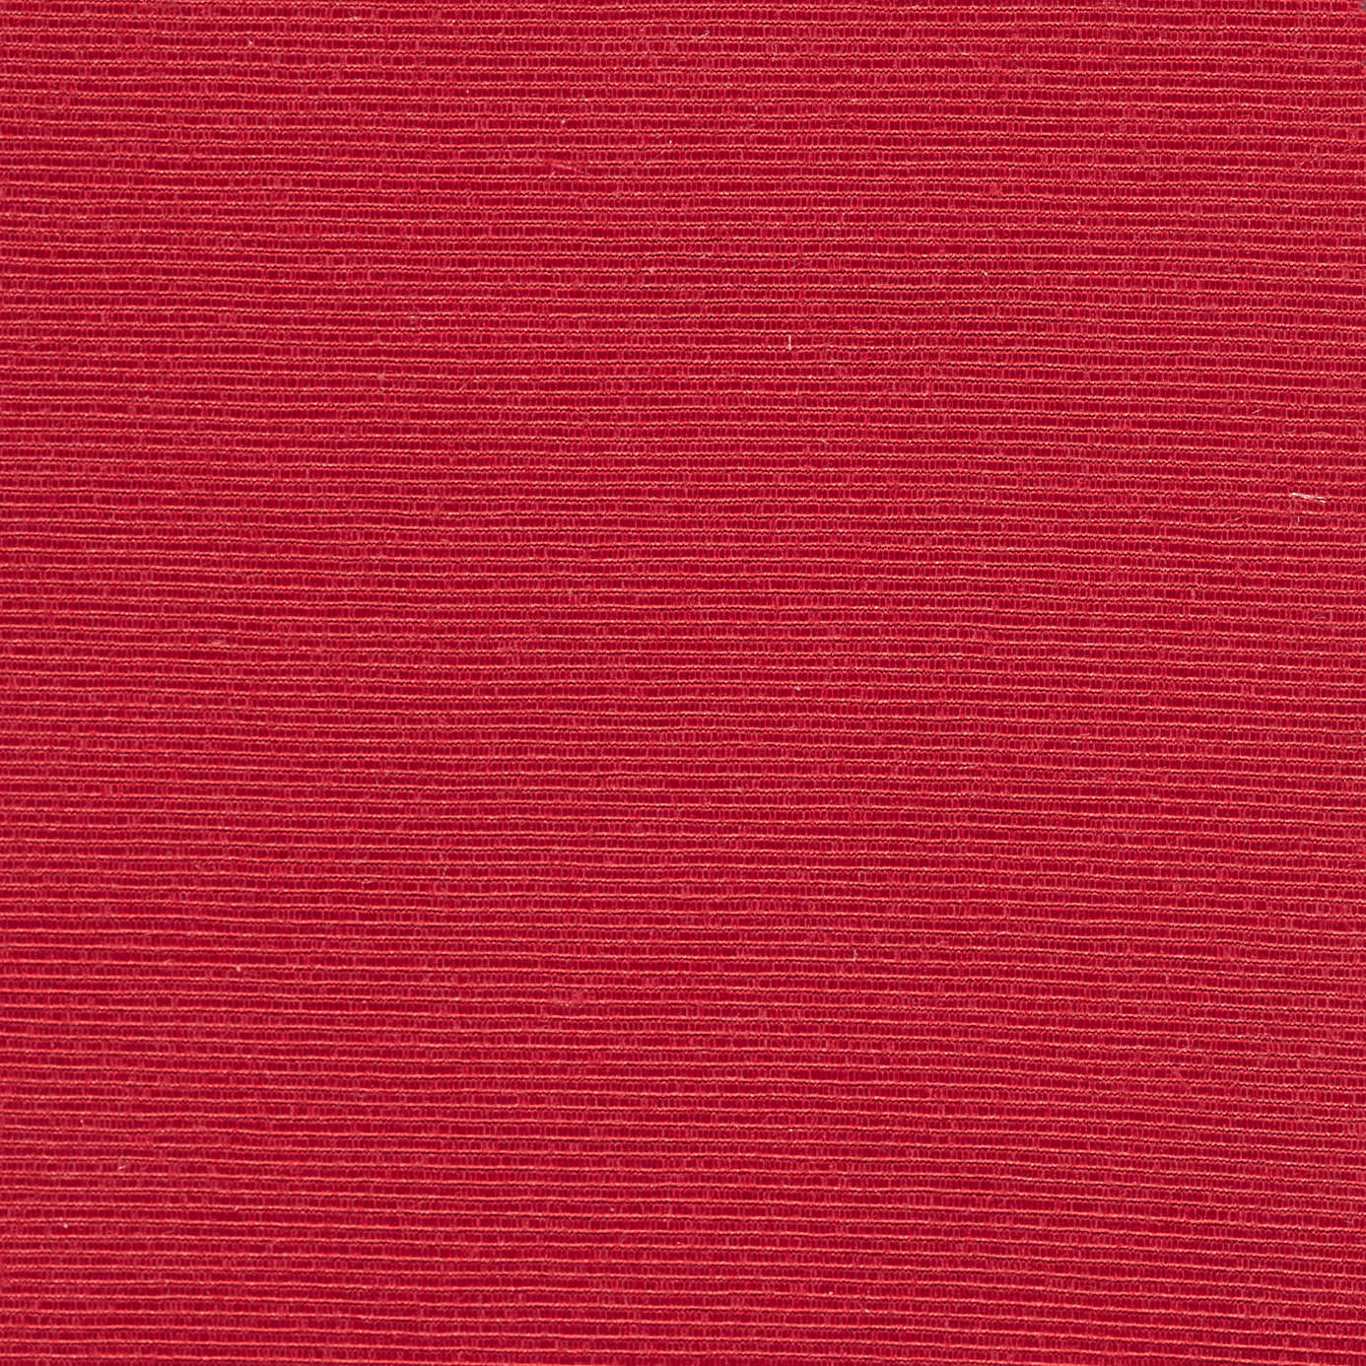 Optix Ruby Fabric by HAR